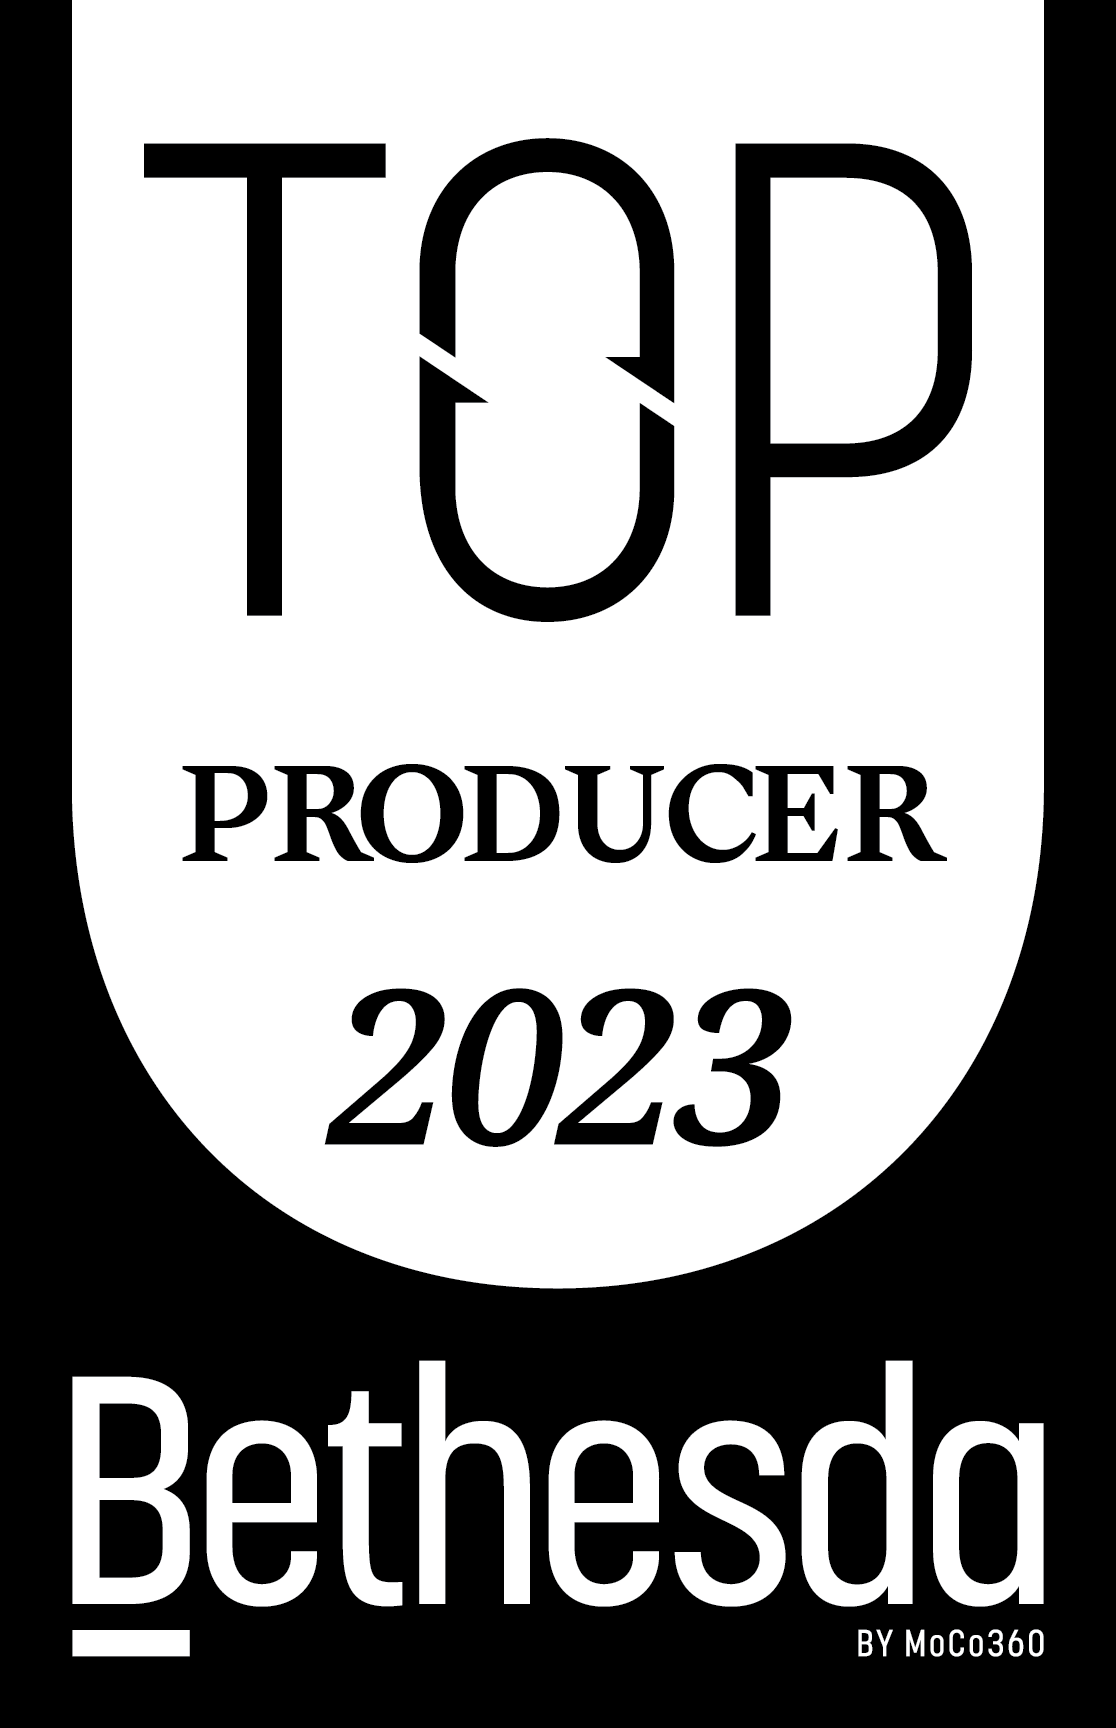 A text banner describing PRODUCER2023